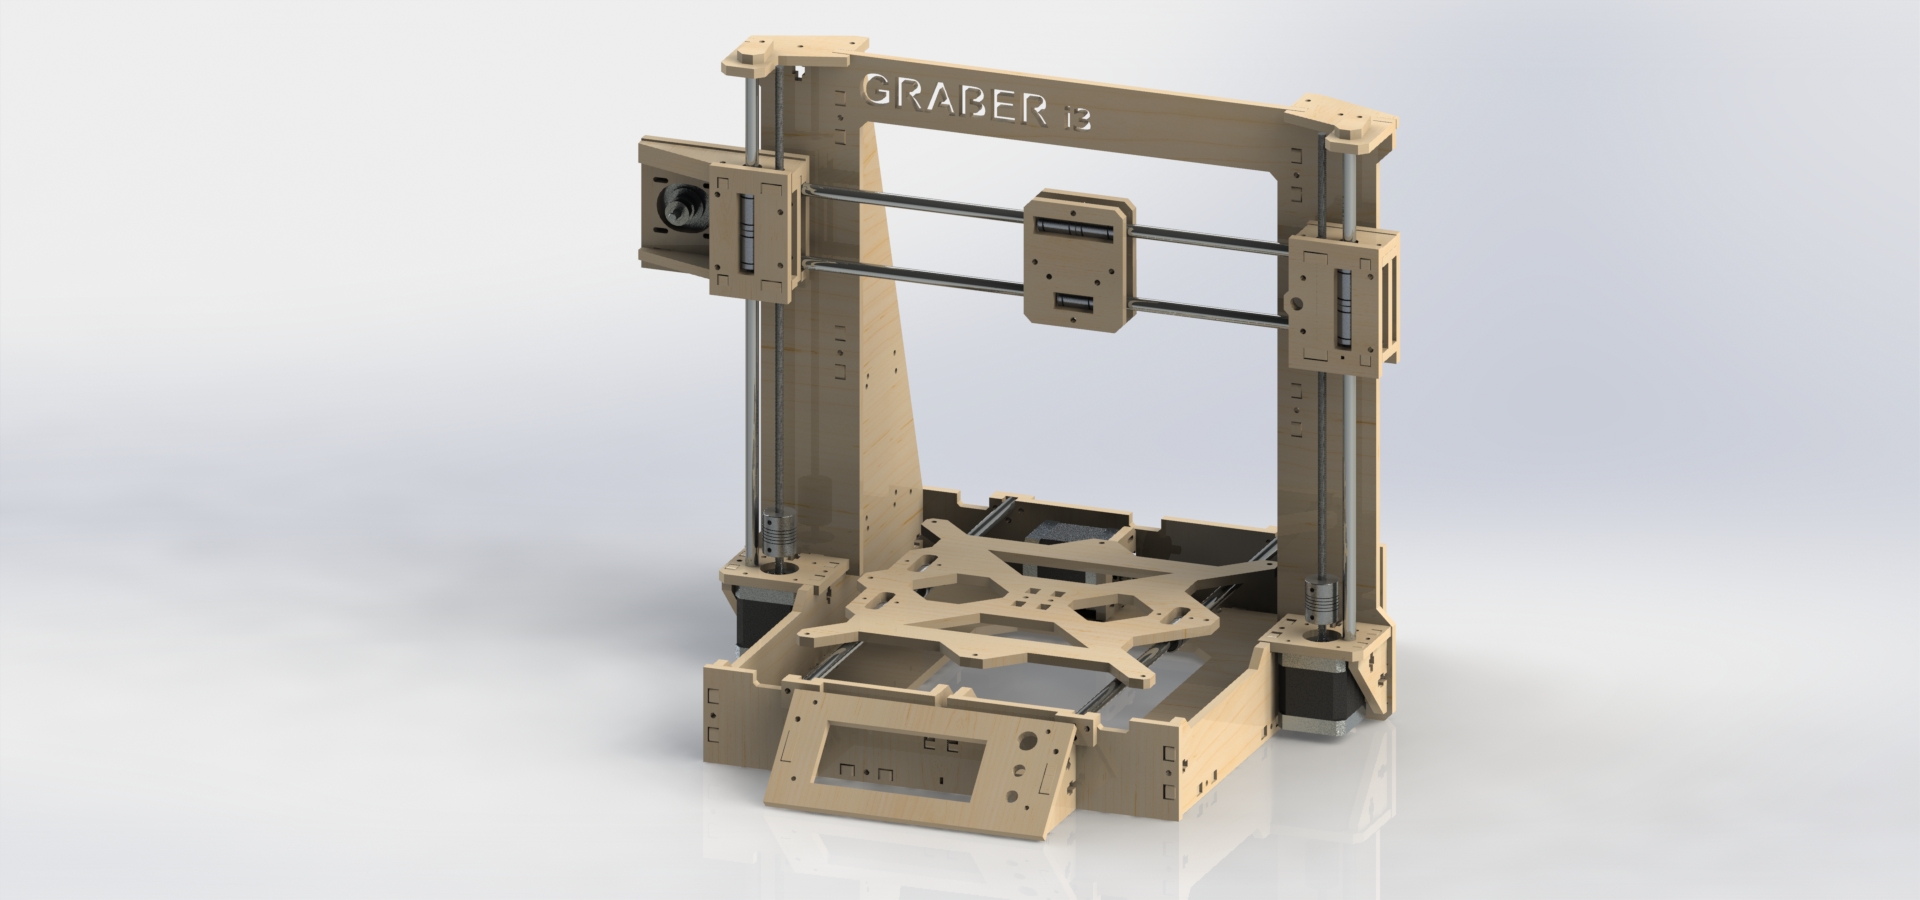 Graber i3 MDF 框架3D打印机